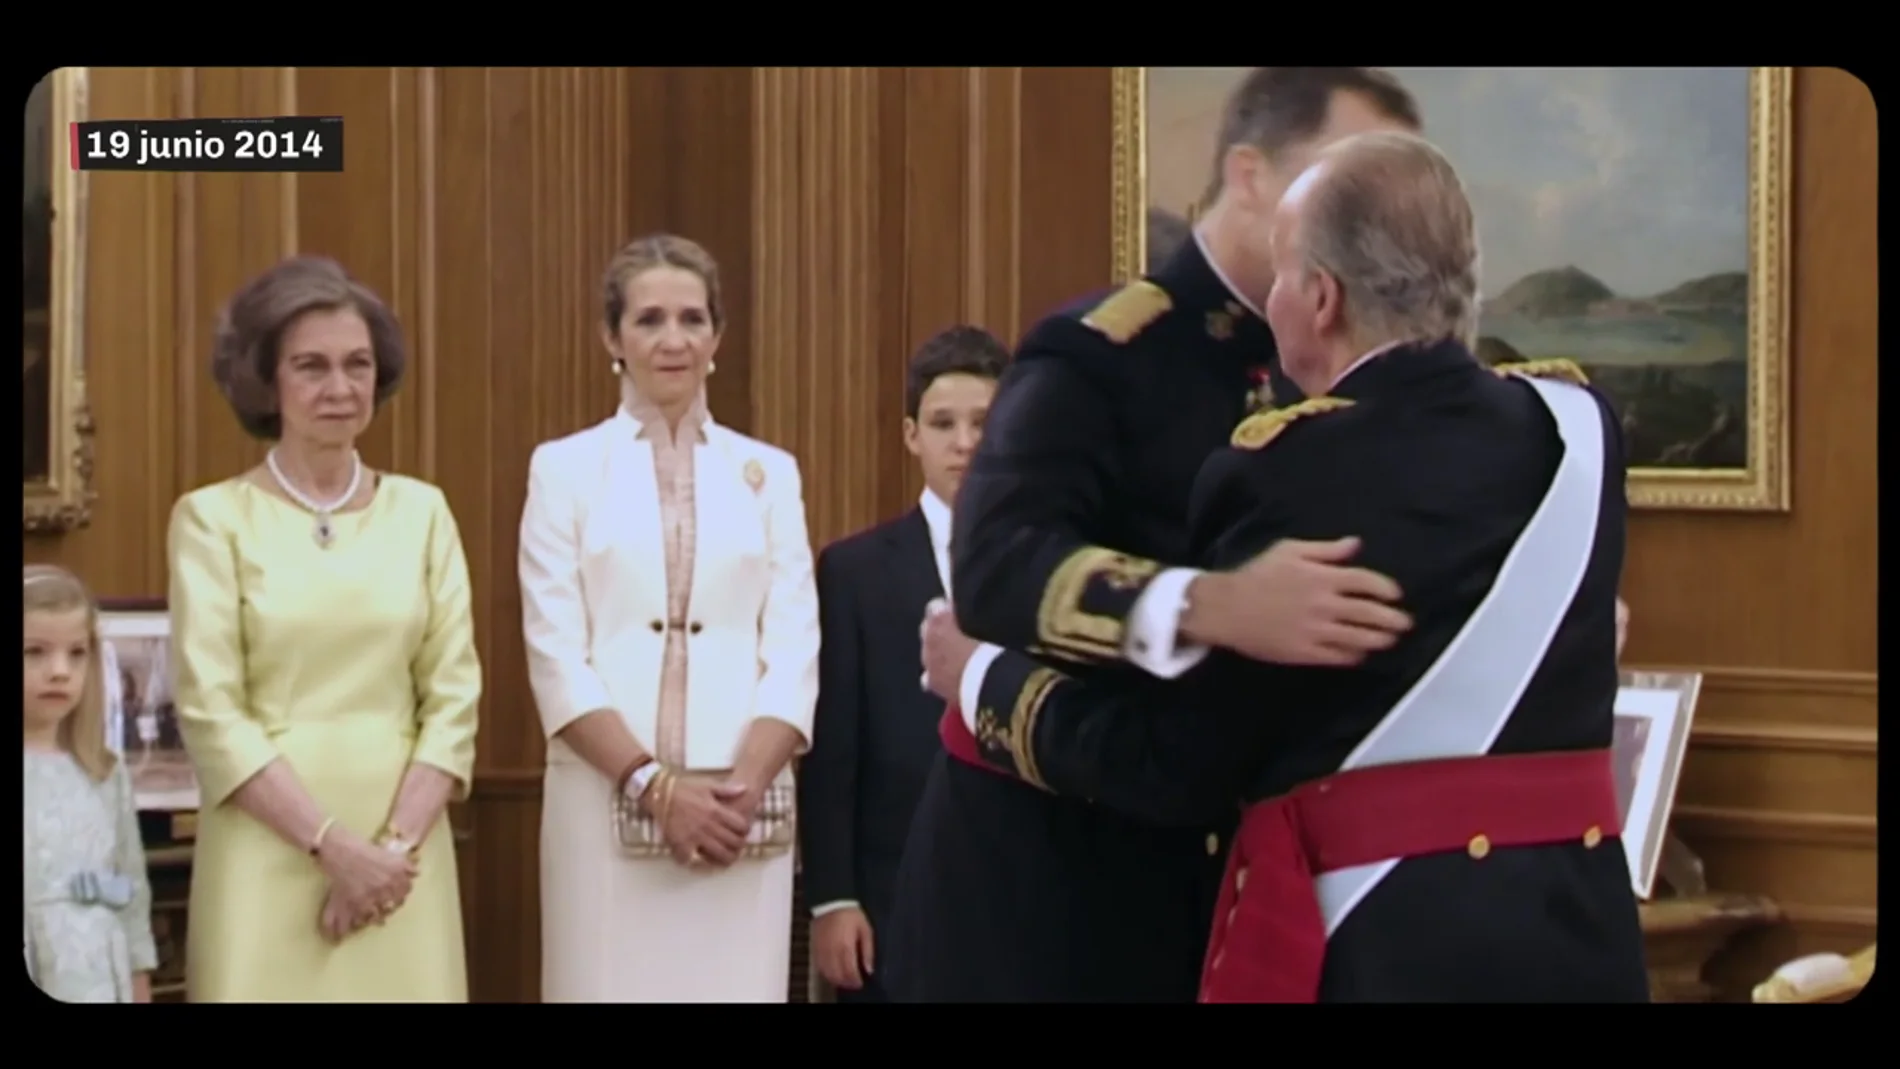 Así sorprendió la Casa Real a España: de la abdicación del rey Juan Carlos al discurso de Felipe VI prometiendo "ejemplaridad"